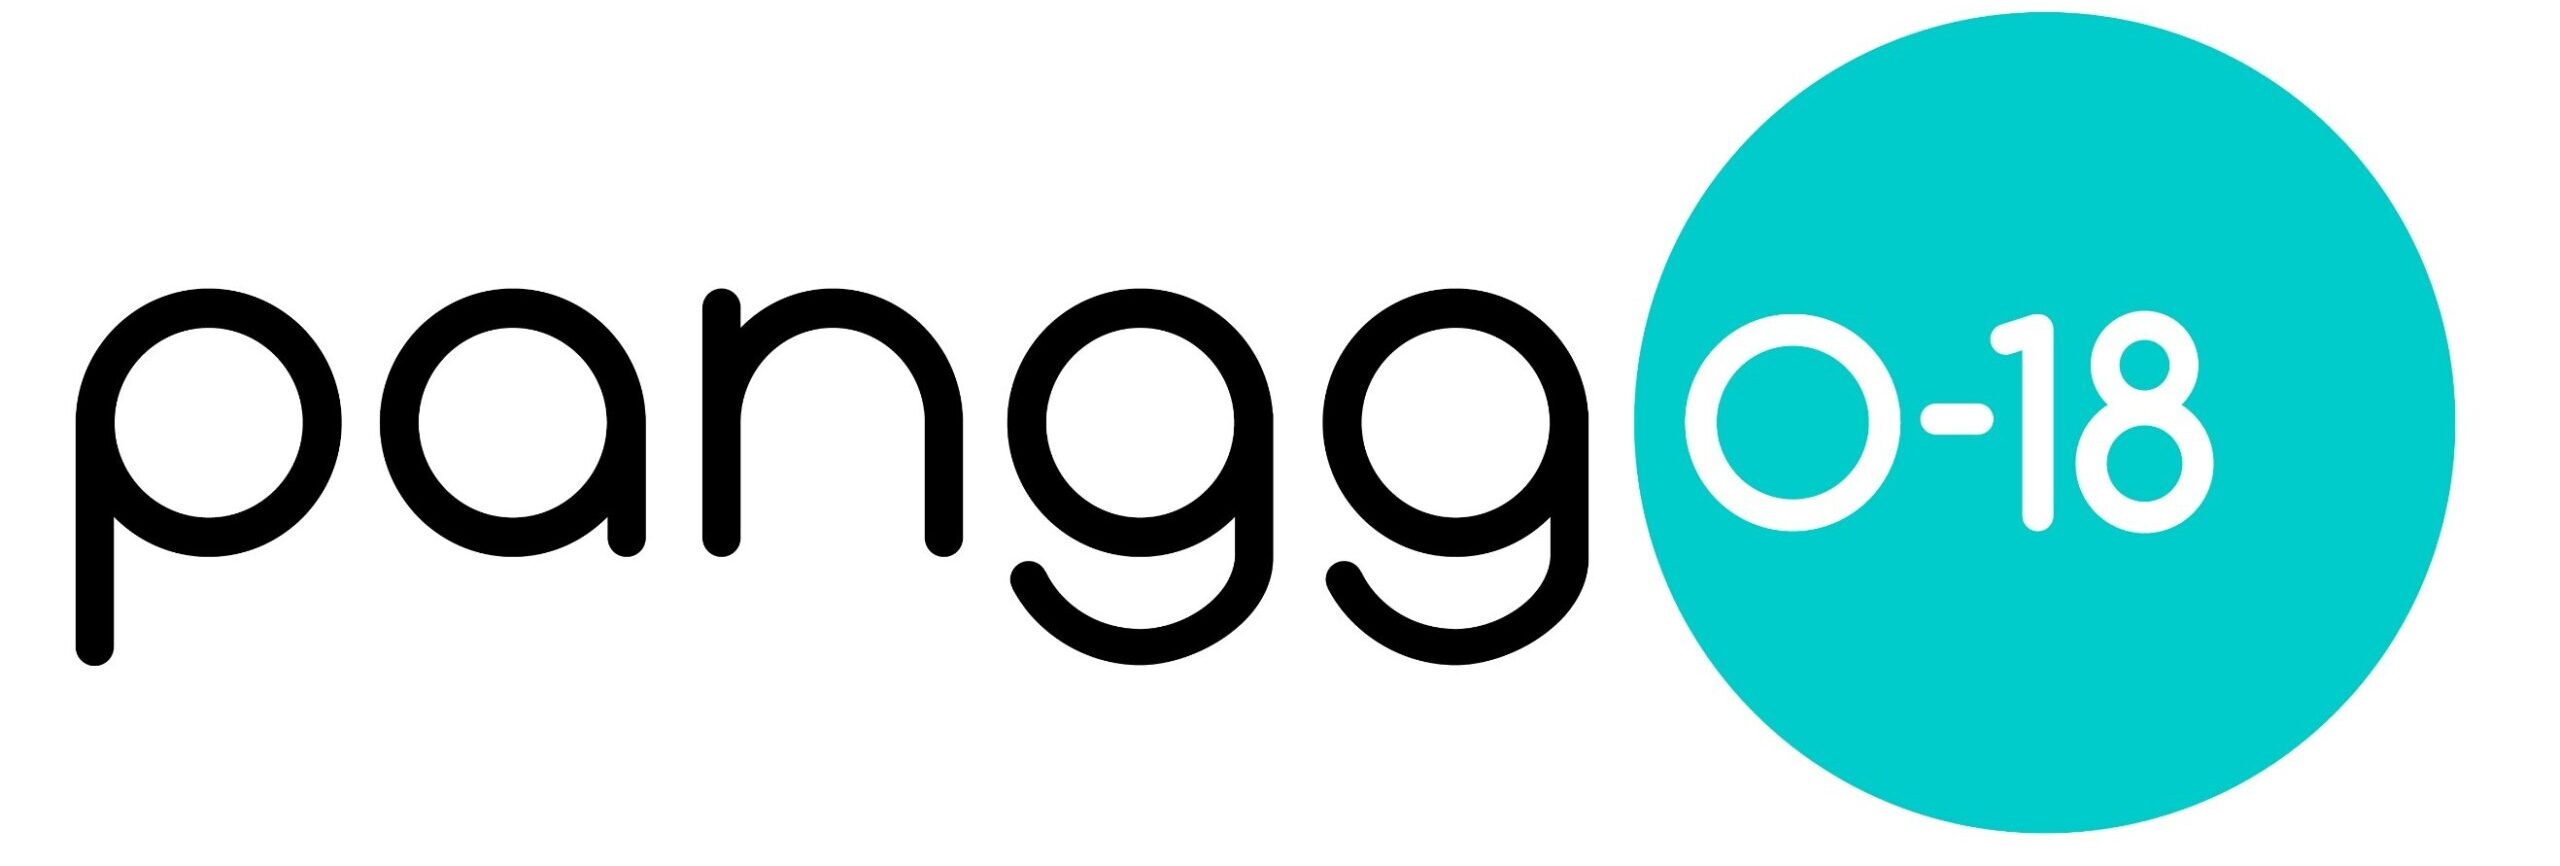 PANGG 0-18